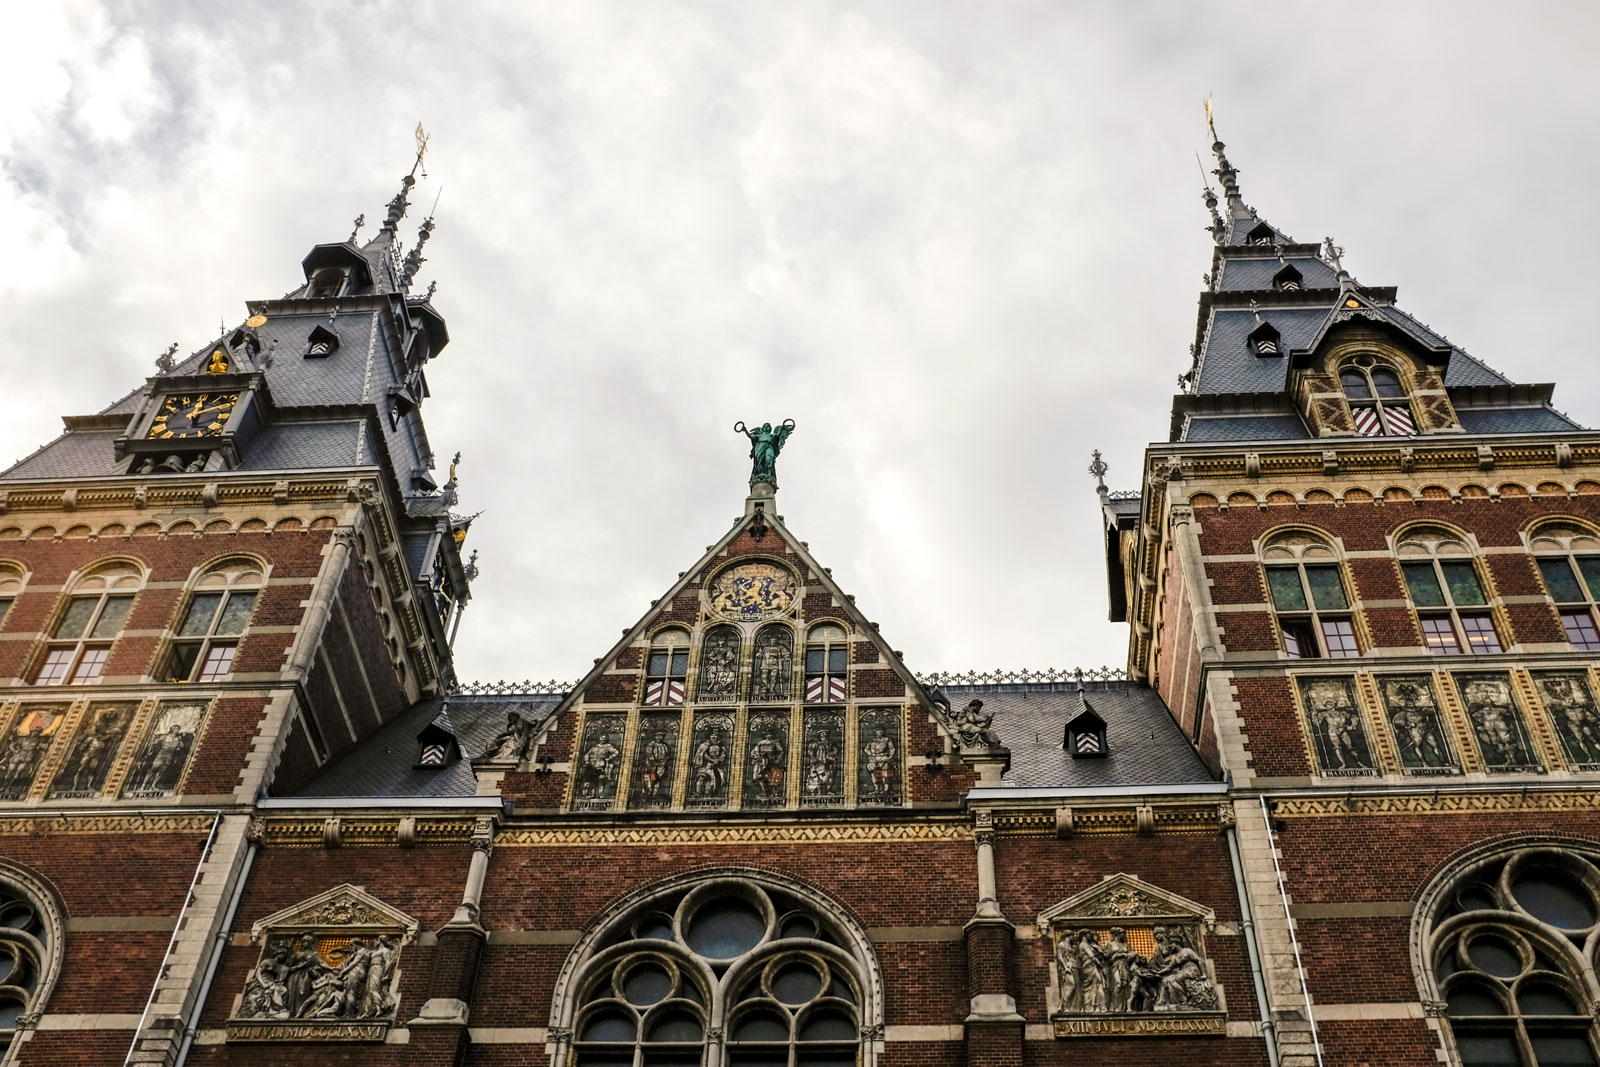 Exterior of the Rijksmuseum in Amsterdam